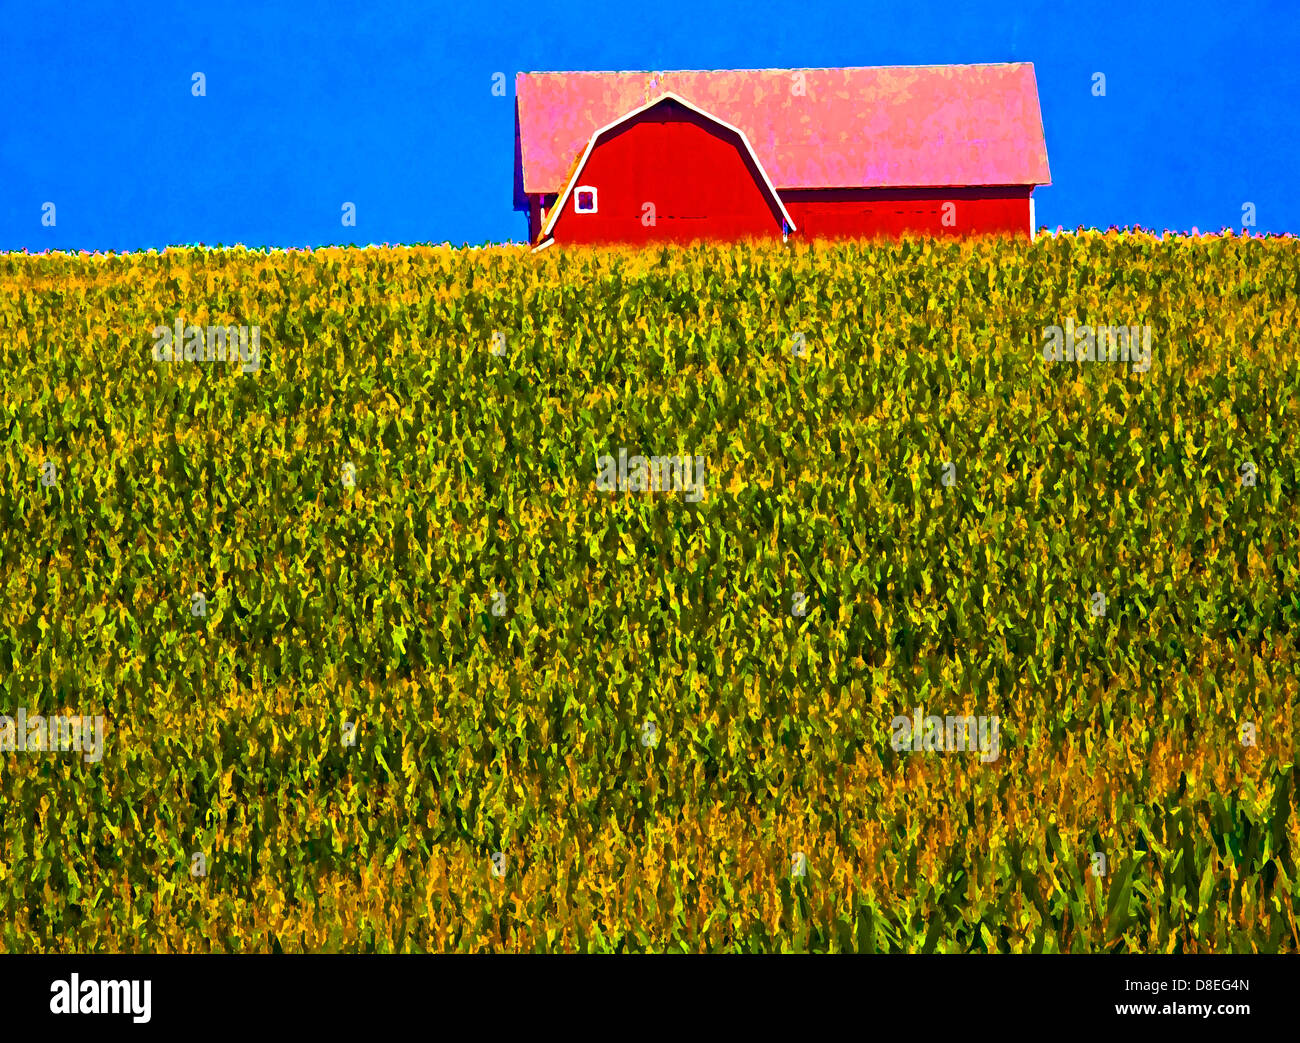 Albion, Michigan - un granero y campo de maíz en la zona rural de Michigan. Foto de stock